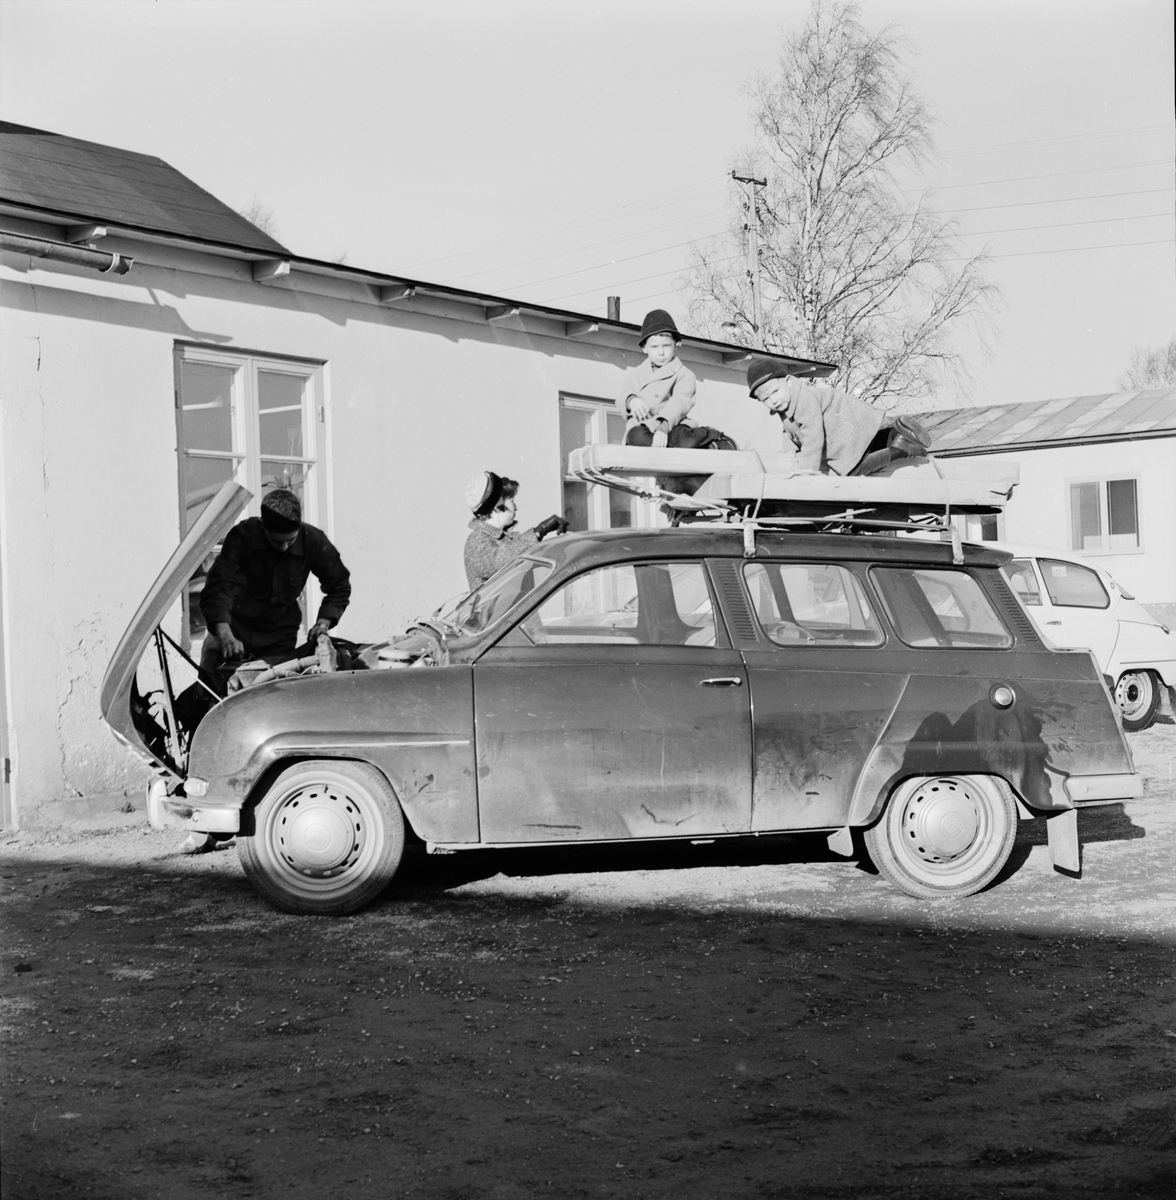 Svensk Bilprovning - "ingen rusning ännu till bilprovningen", Uppsala 1964